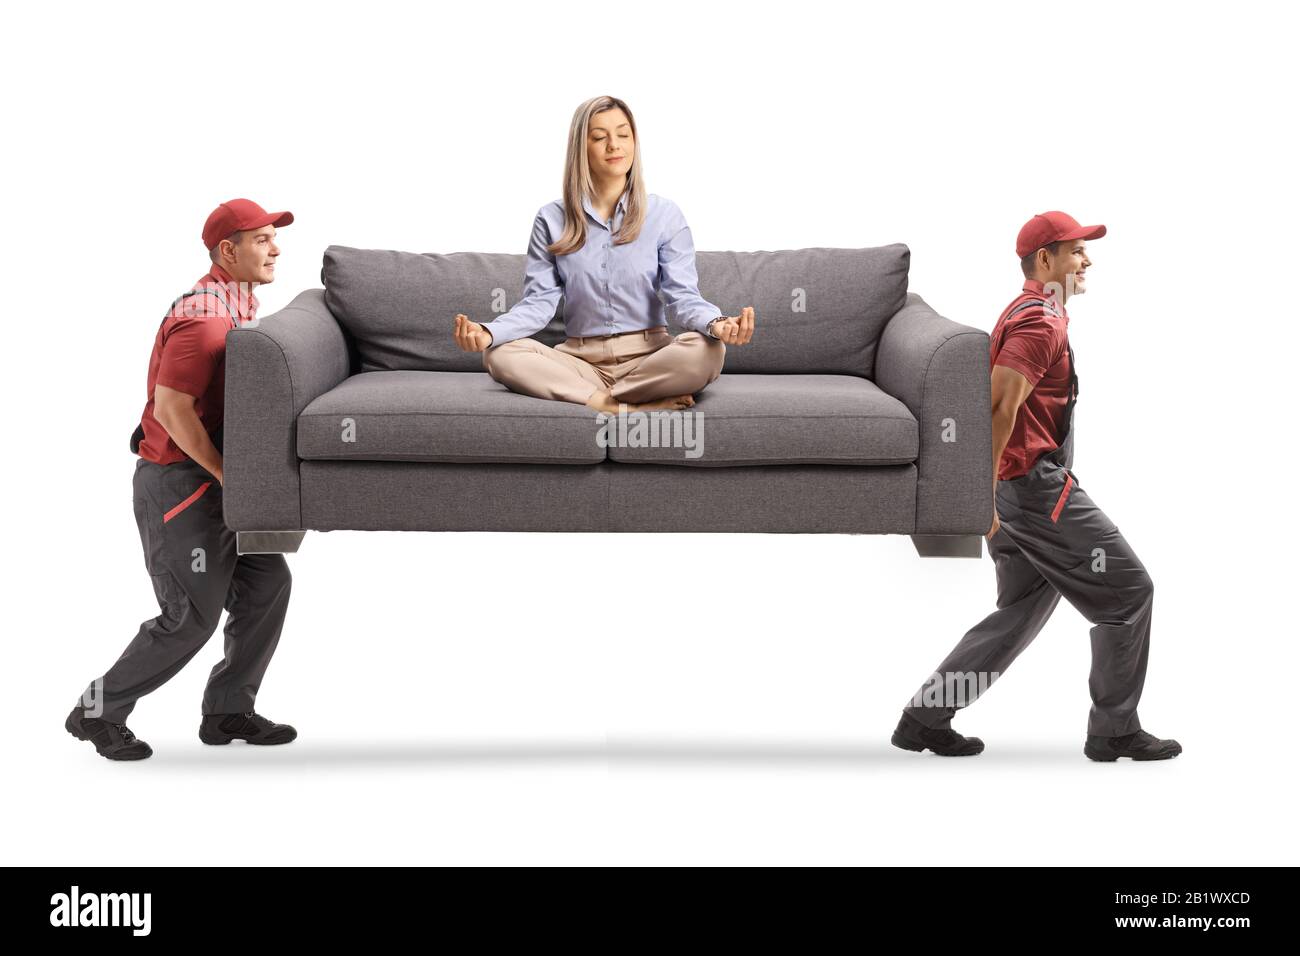 Junge Frau meditiert auf einem Sofa und zwei männliche Arbeiter, die das Sofa tragen, isoliert auf weißem Hintergrund Stockfoto